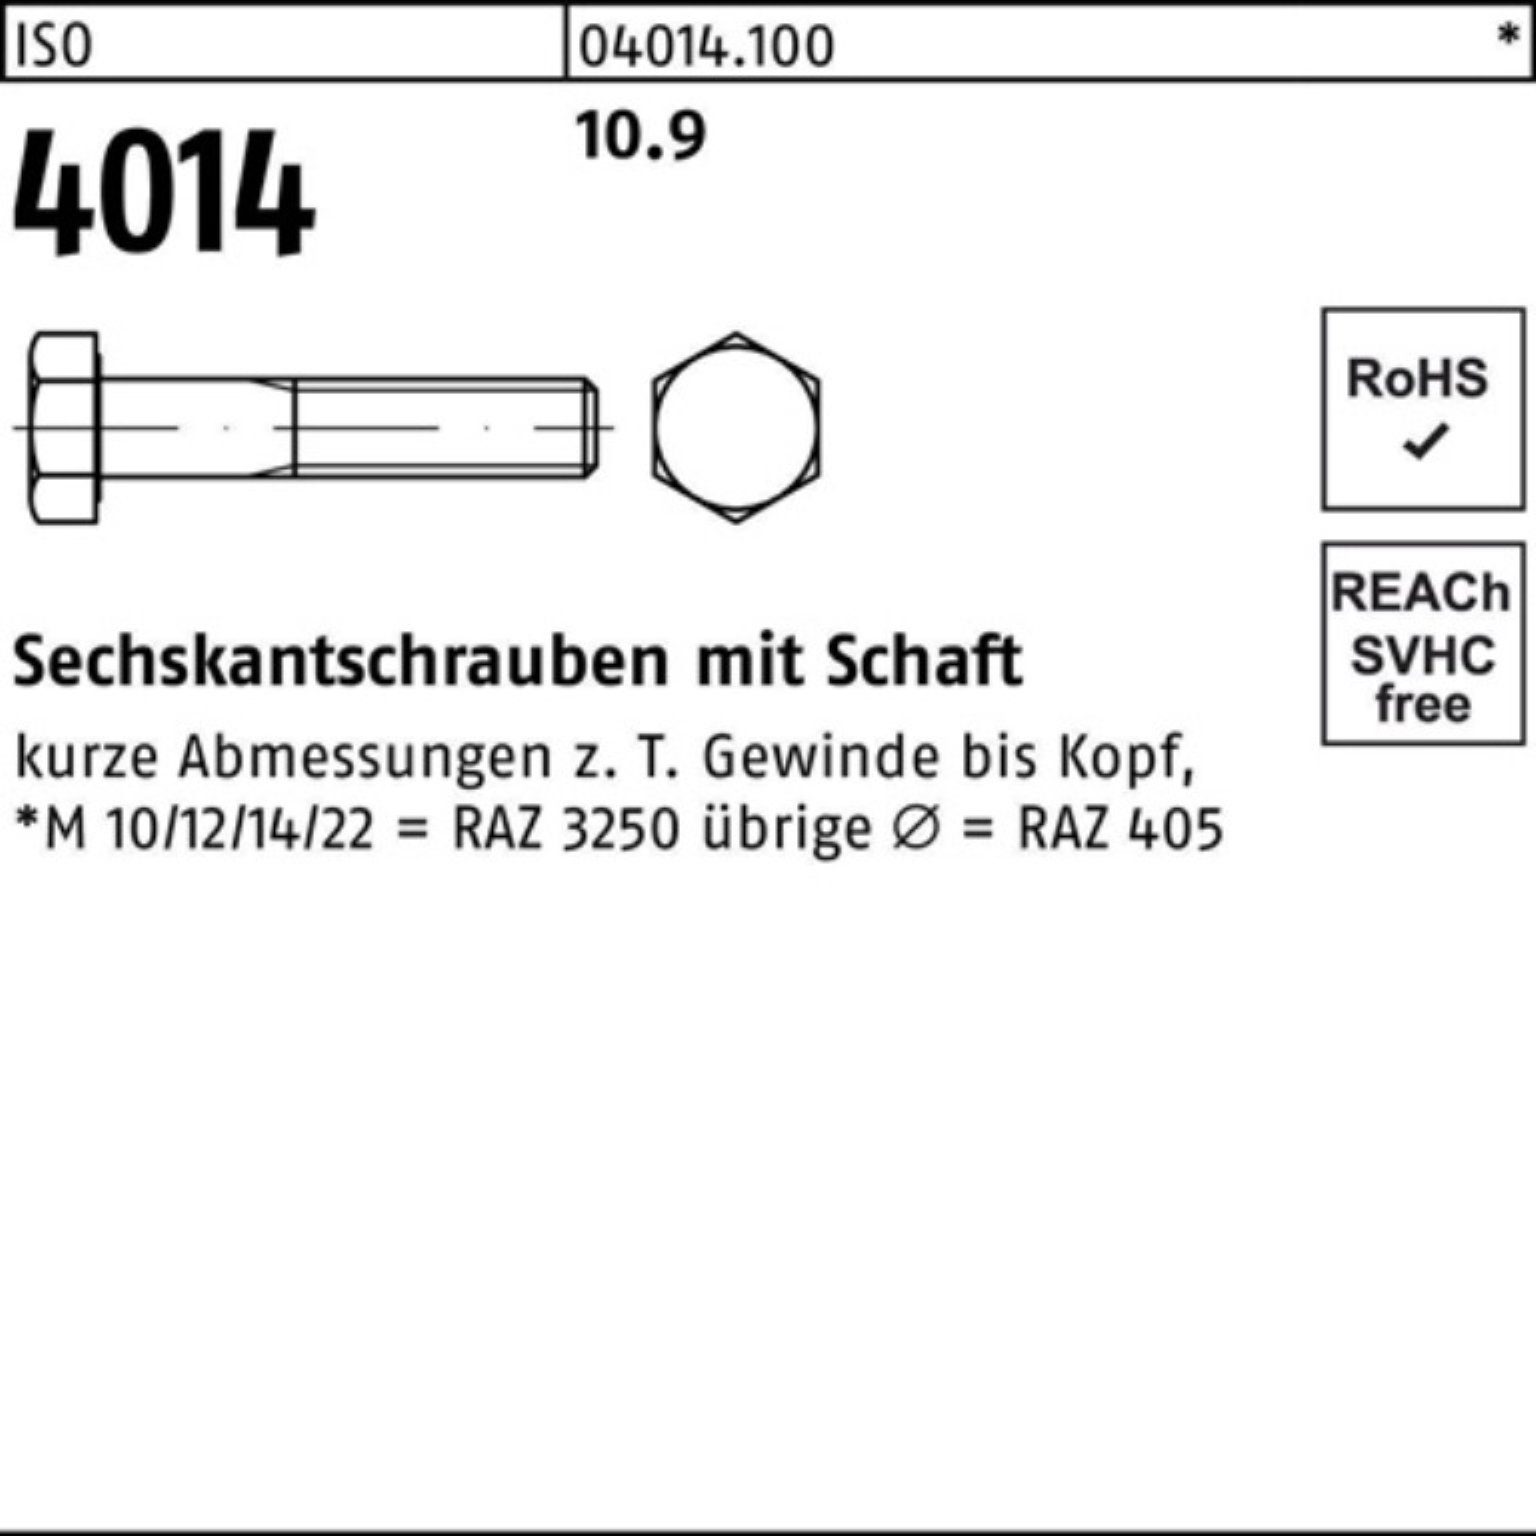 240 IS Pack Bufab Stück 1 M48x 4014 Schaft ISO 100er 10.9 Sechskantschraube Sechskantschraube